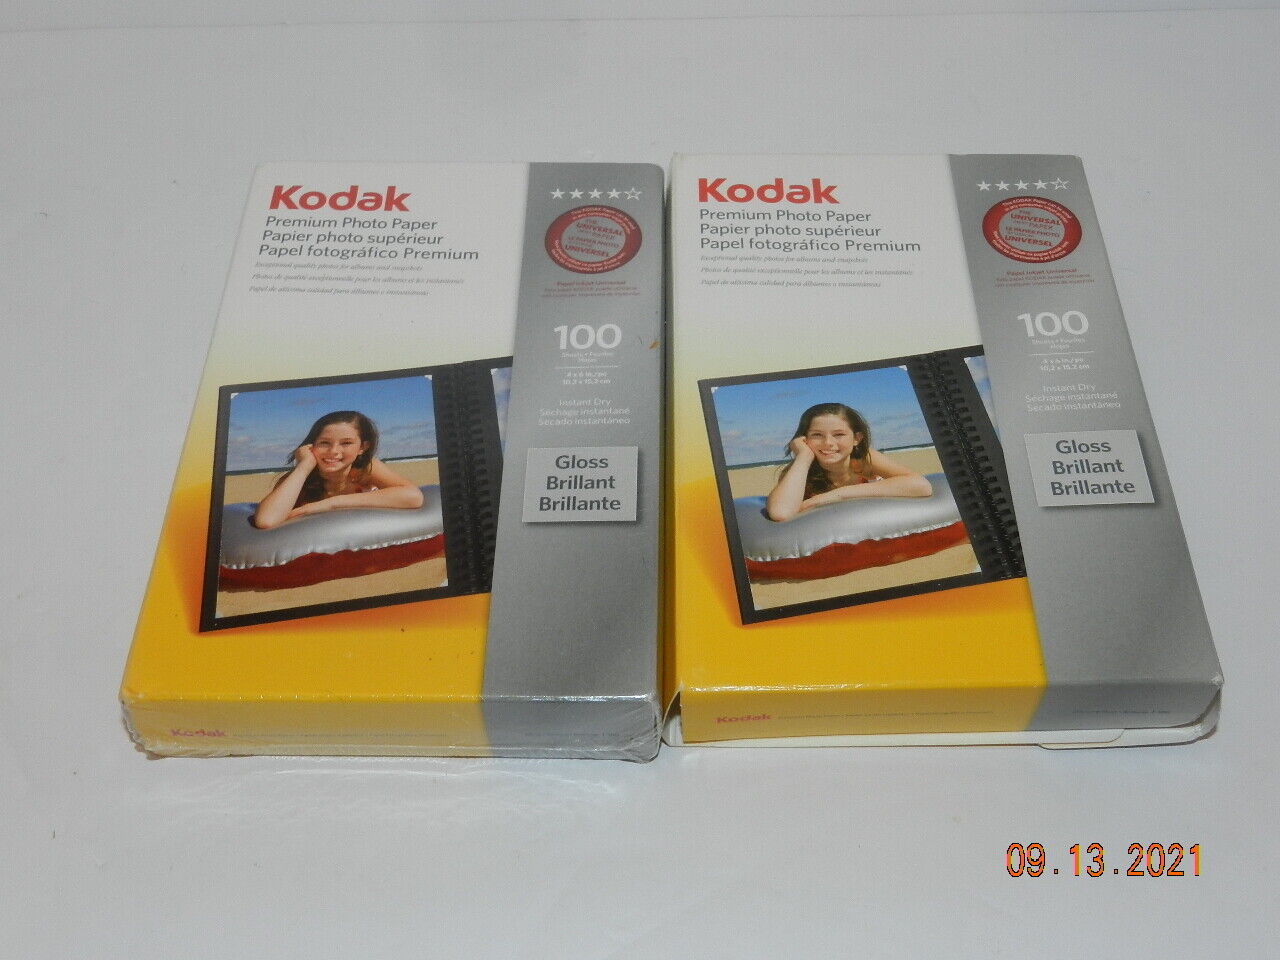 Kodak Premium Picture 4x6 Photo Paper Gloss Brilliant 200 sheets - 2 packs 